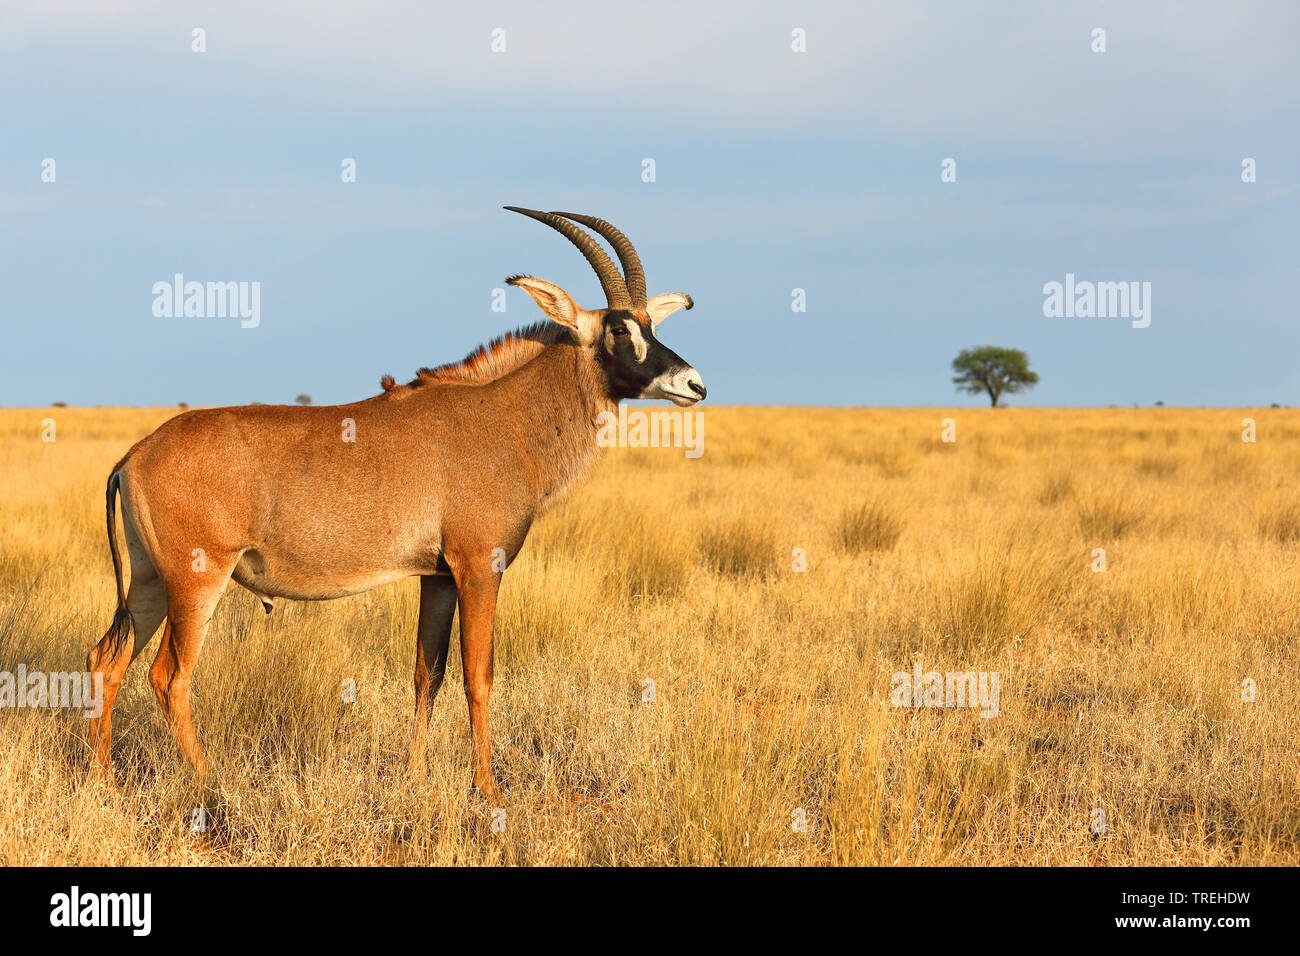 L'antilope rouanne (Hippotragus equinus), l'homme se trouve dans la savane, Afrique du Sud Banque D'Images